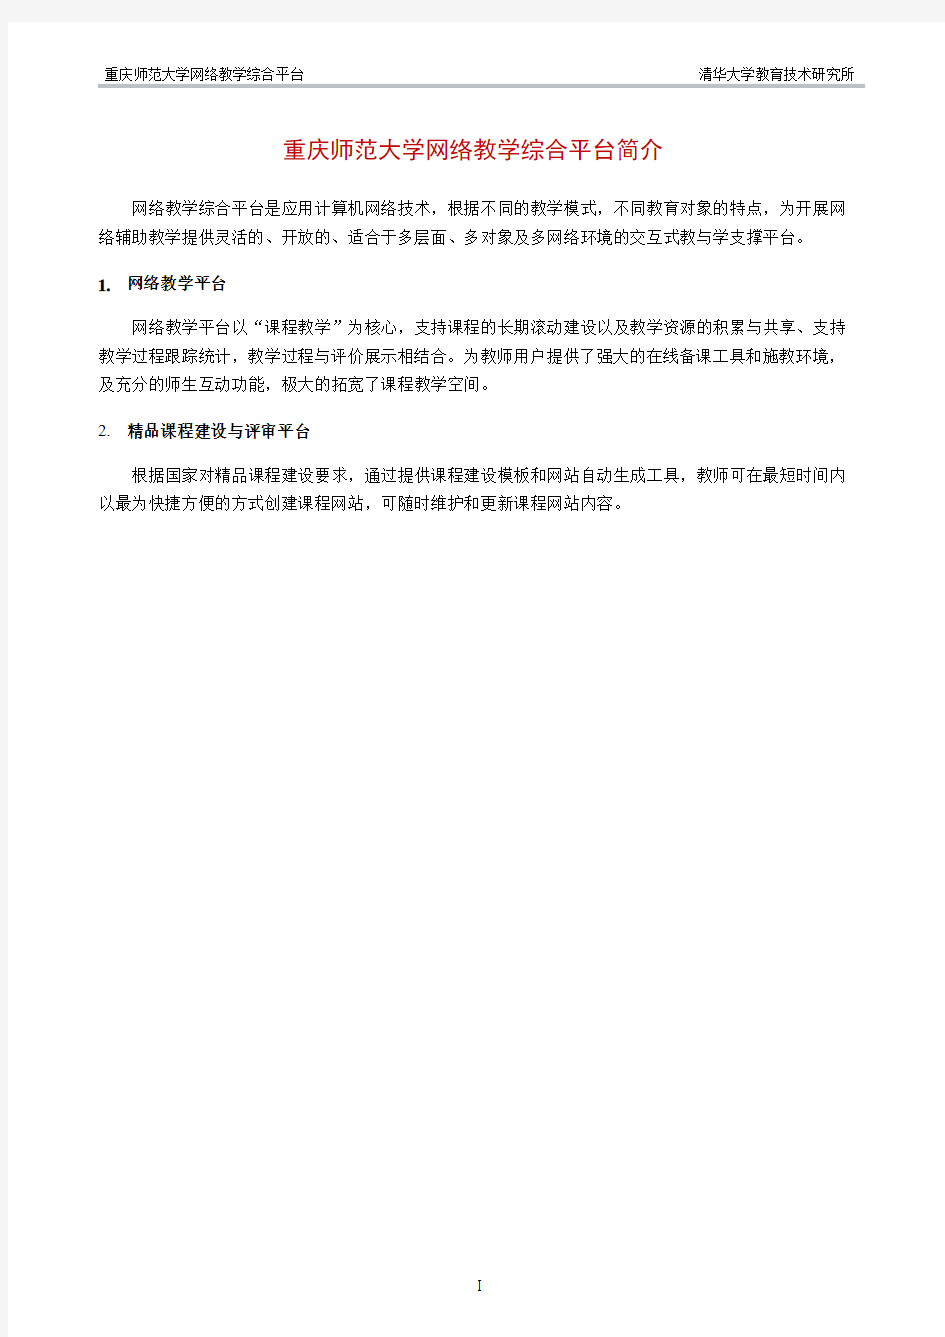 重庆师范大学教师用户简明图文操作手册